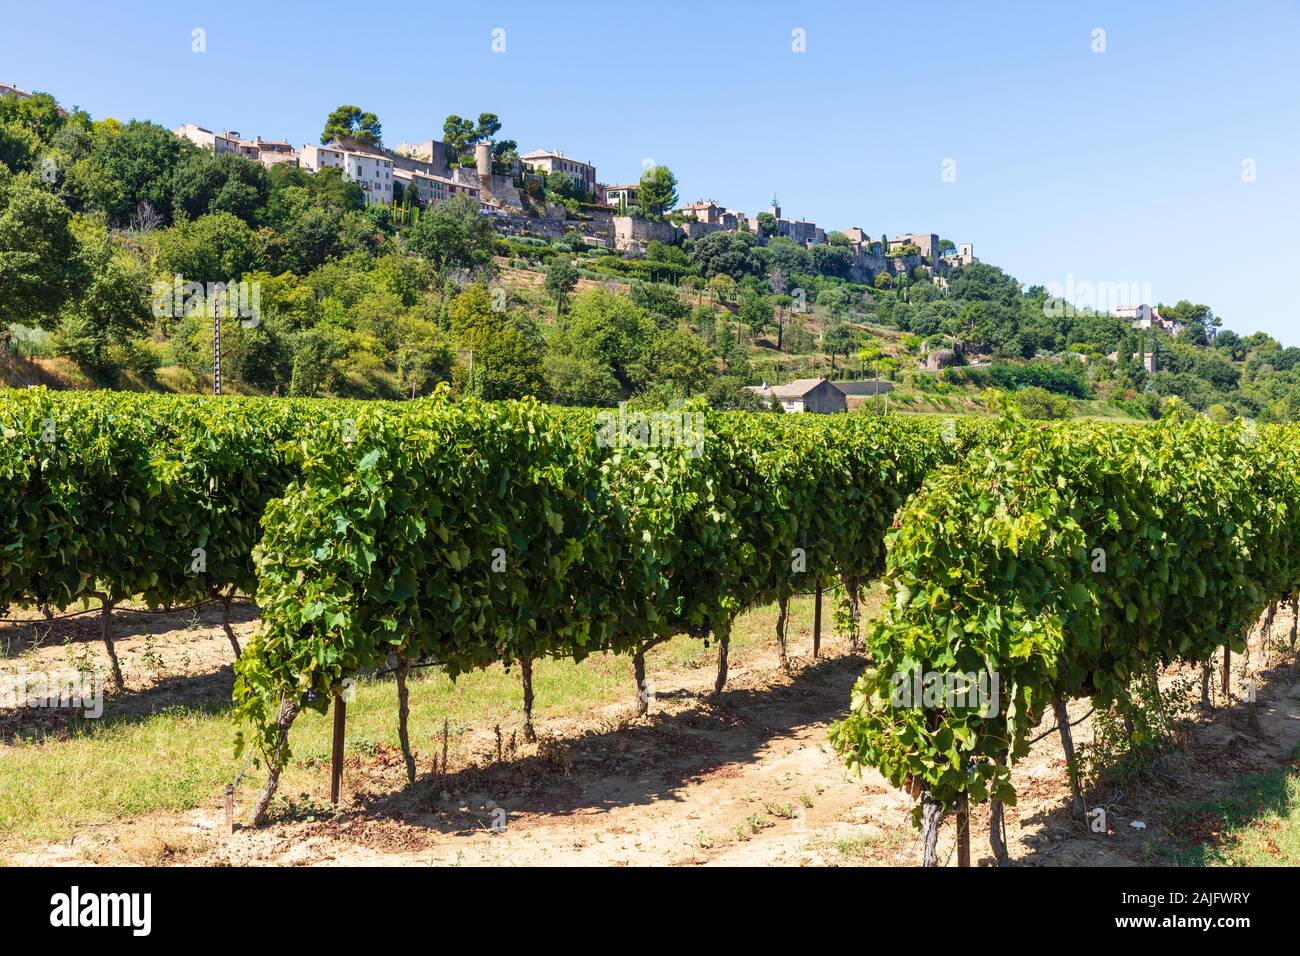 Vista de una típica aldea francesa y vinyard en el Luberon, Provenza, en el sur de Francia Foto de stock